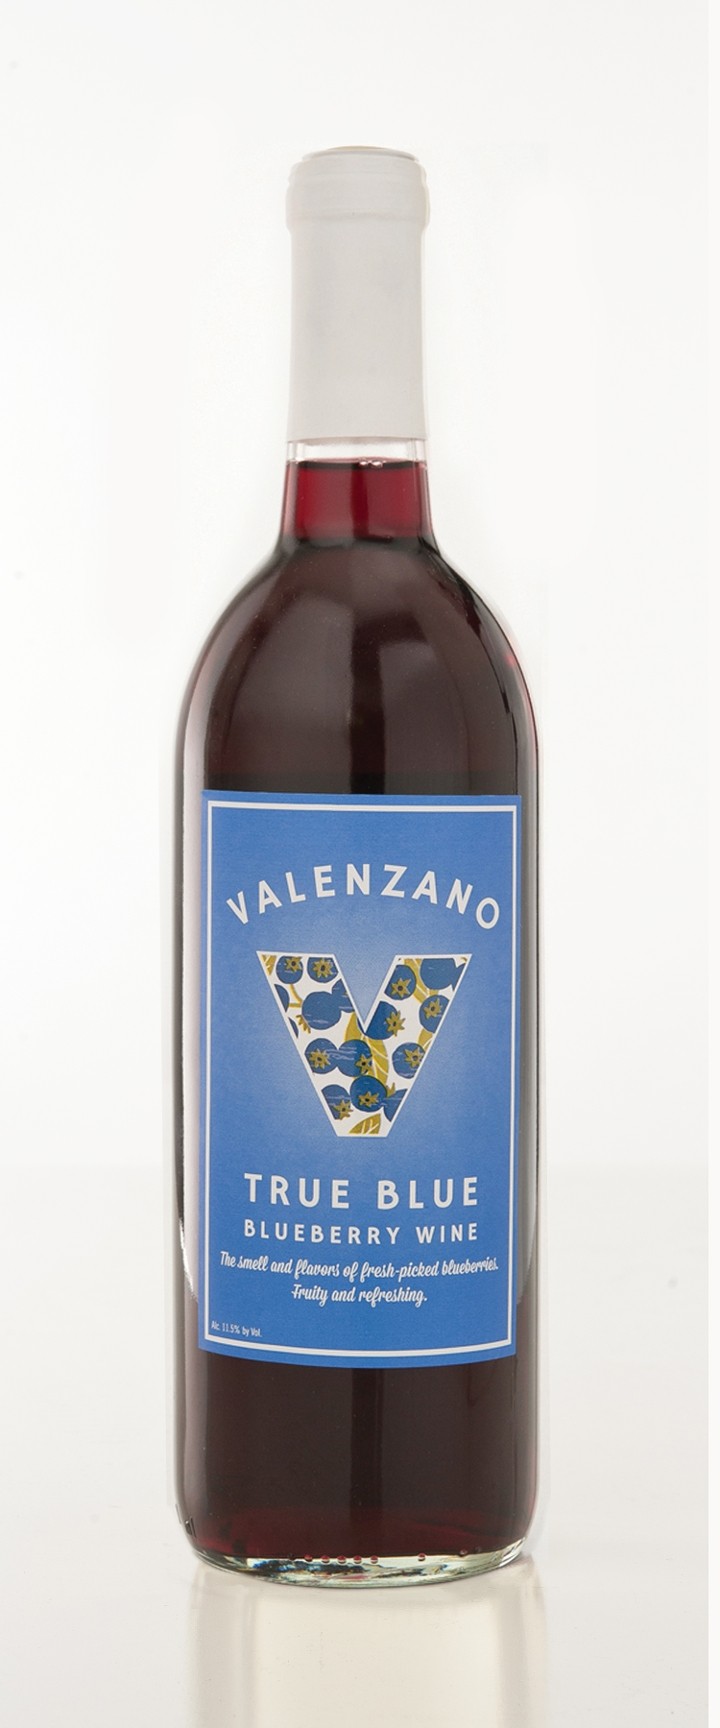 Harvest: True Blue Blueberry Bottle